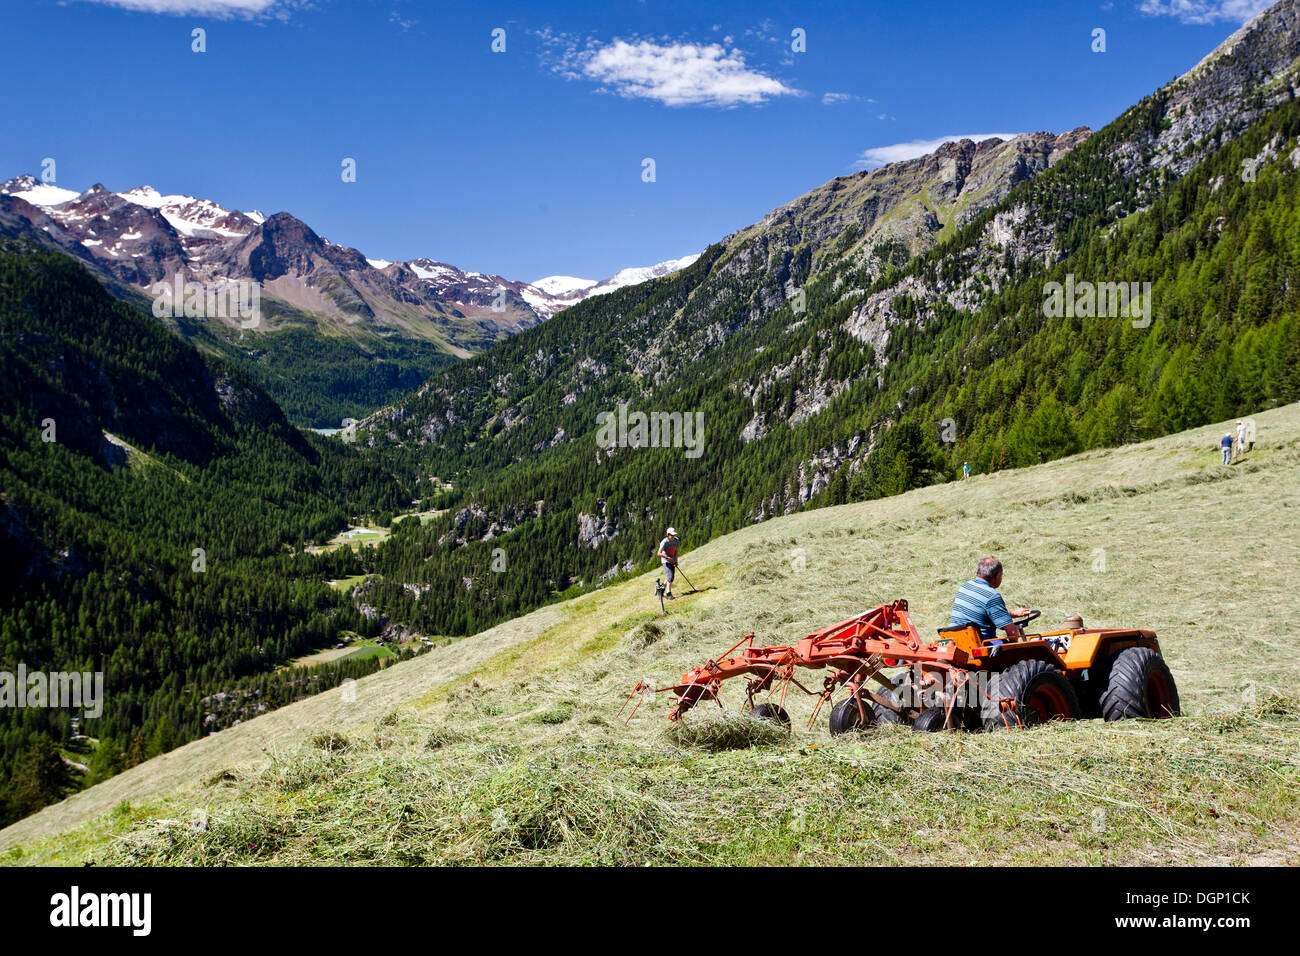 Los agricultores de las montañas haciendo heno, cerca Martelltal Stallwies, valle, Vinschgau, provincia de Bolzano-Bozen, Italia, Europa Foto de stock